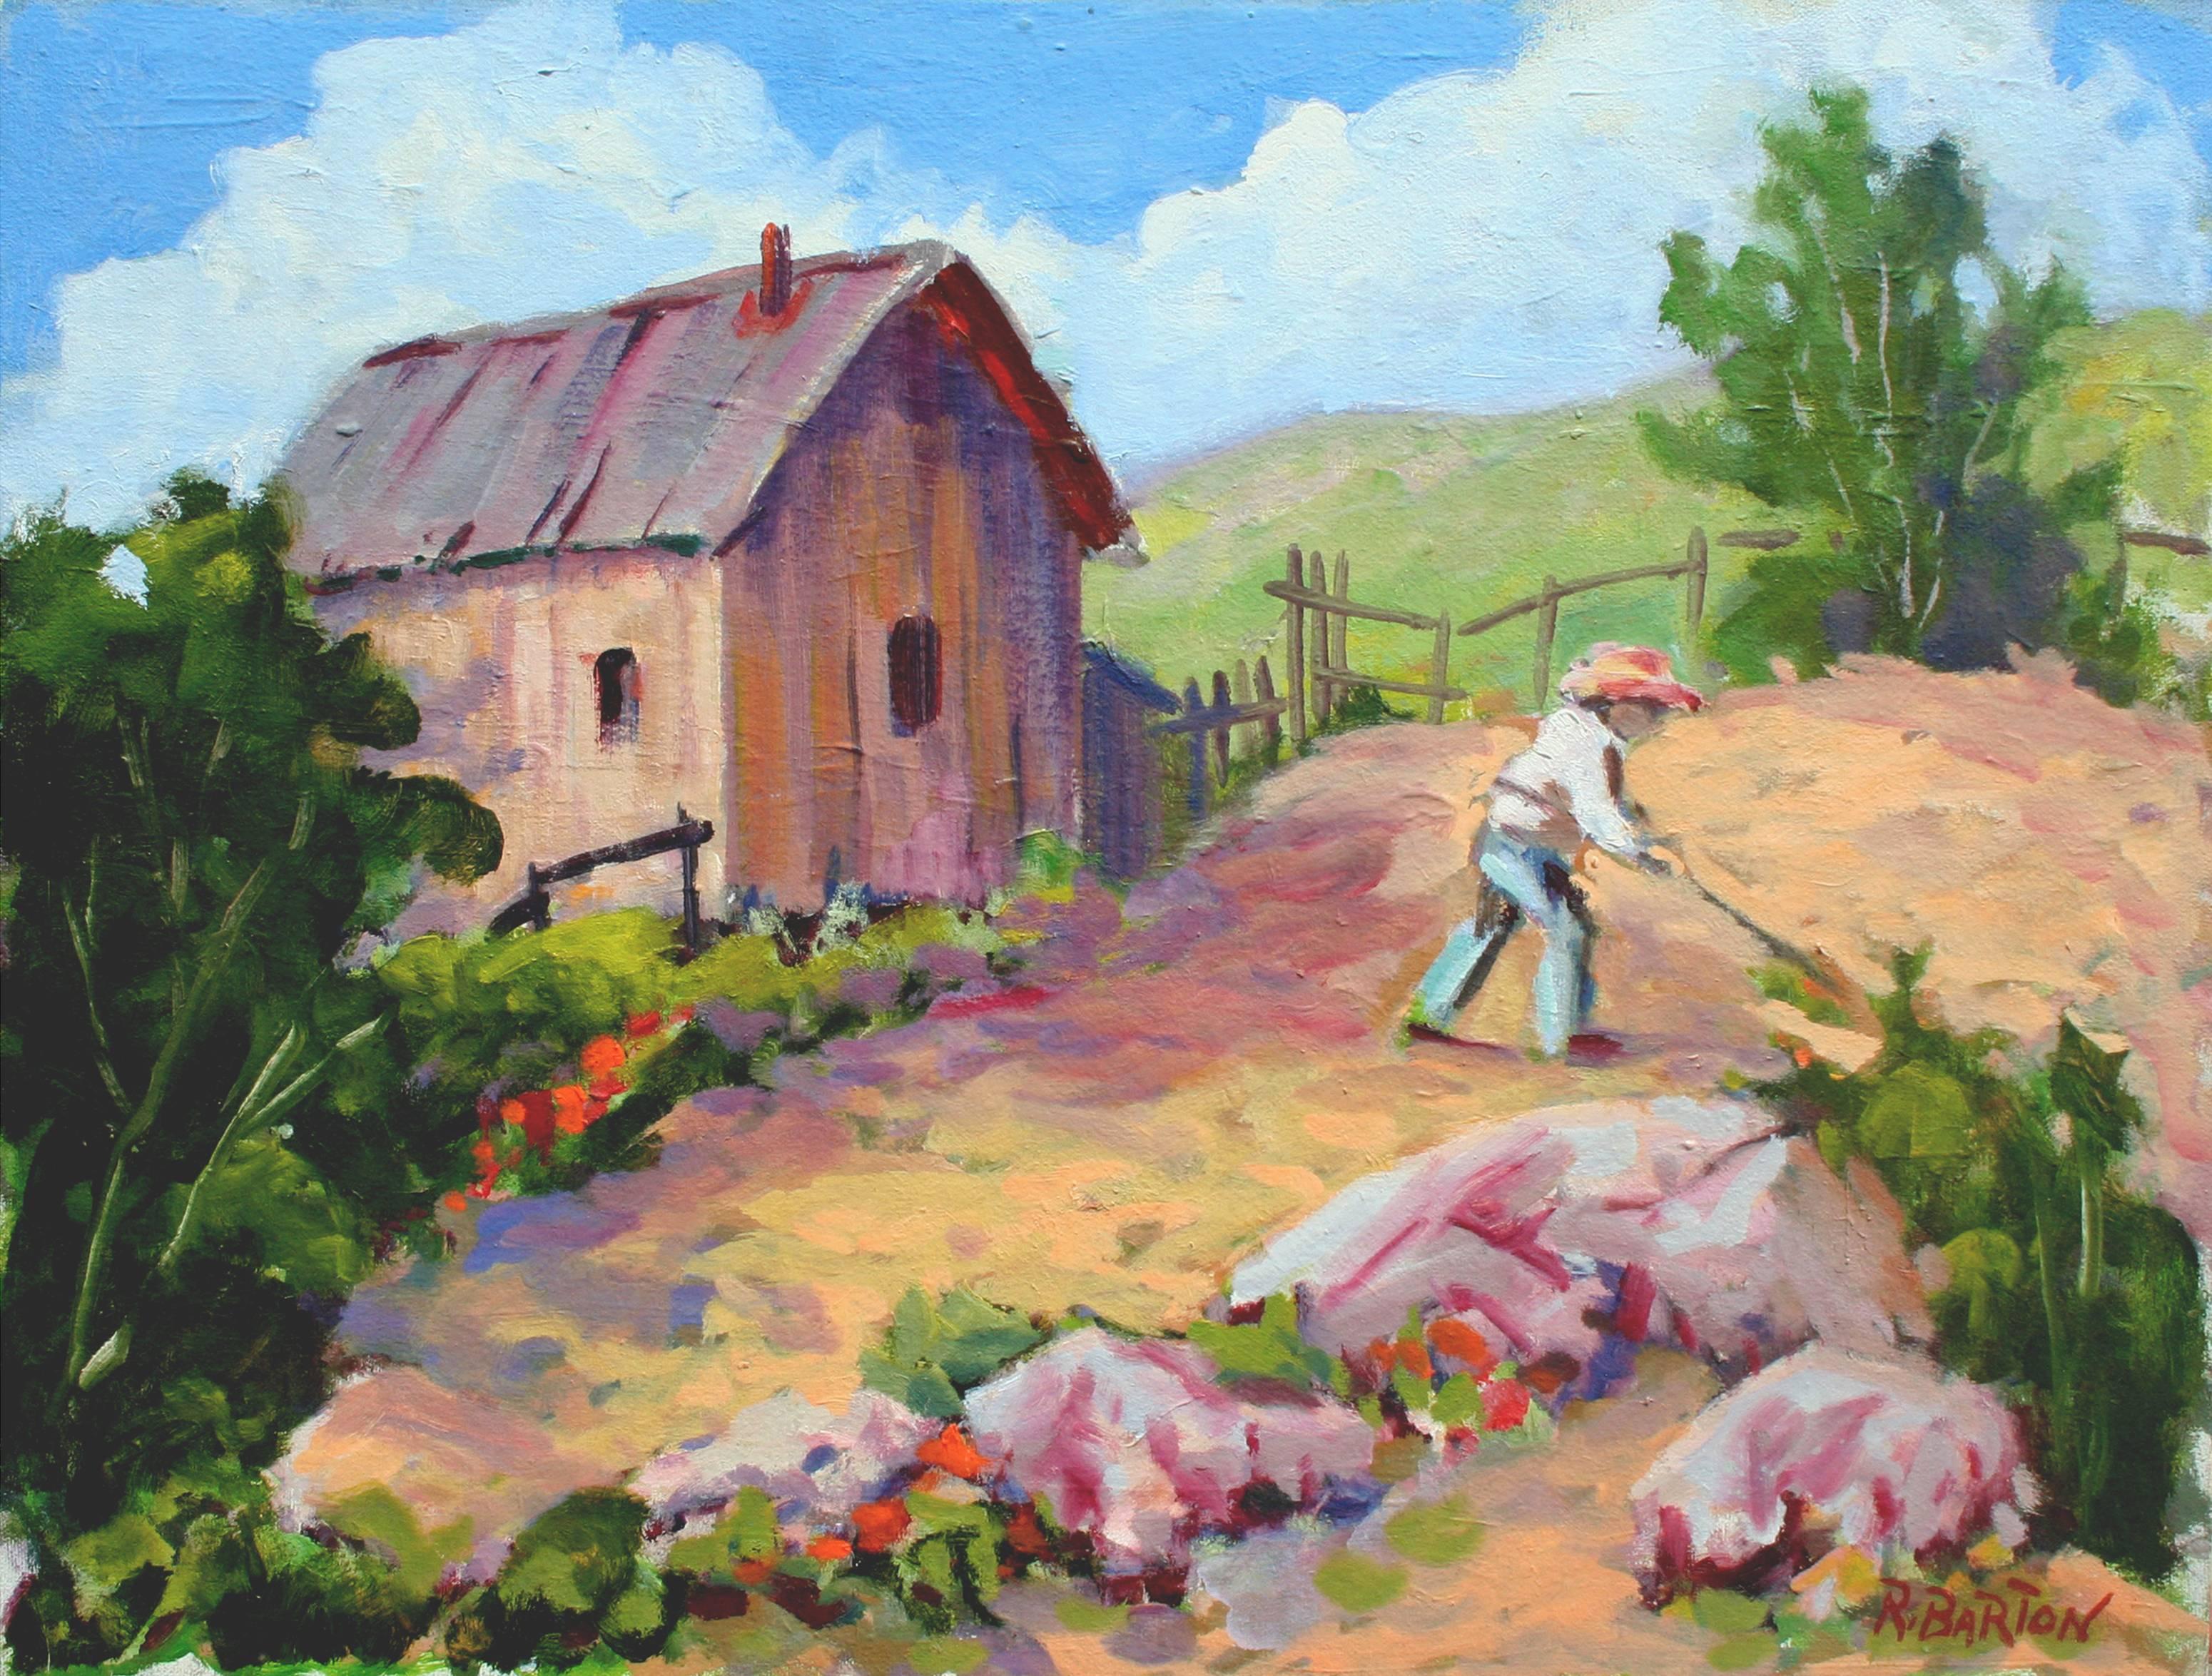 Gardener-Landschaft im Carmel Valley – Painting von Ray Barton